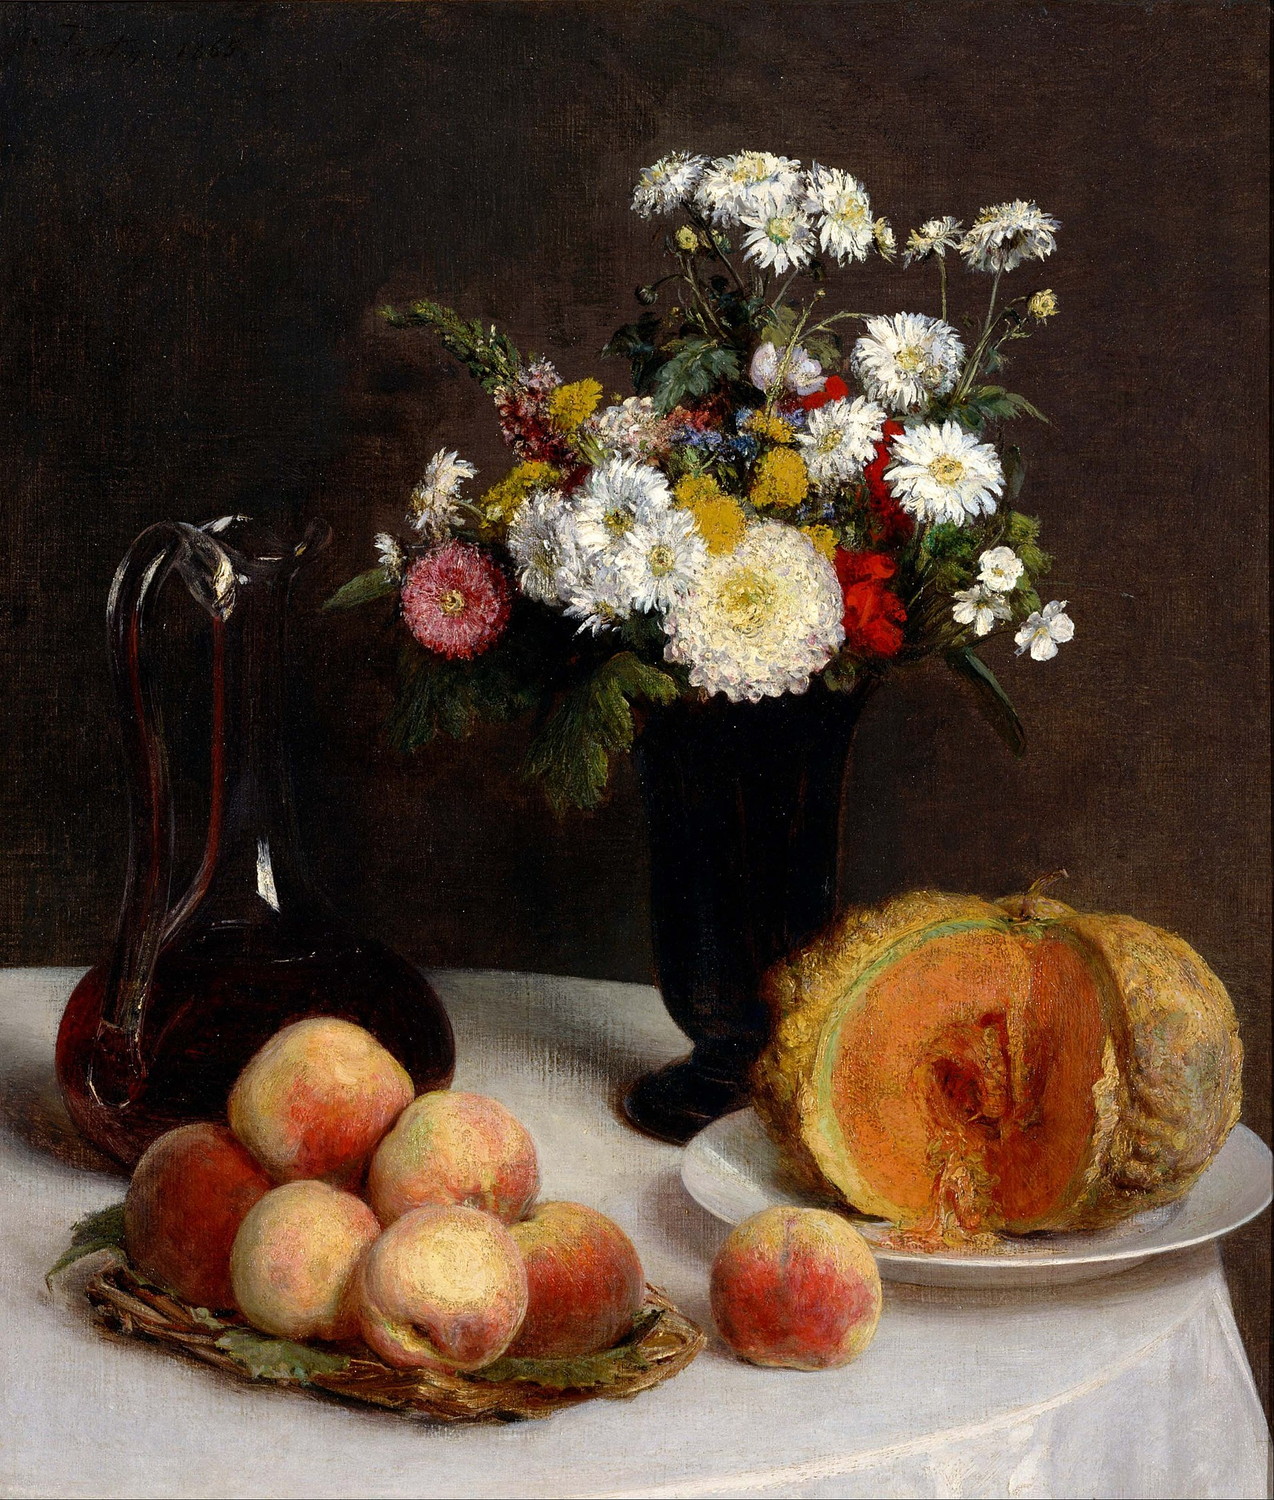 『カラフ、花、果物のある静物』 アンリ・ファンタン・ラトゥール 【1865】